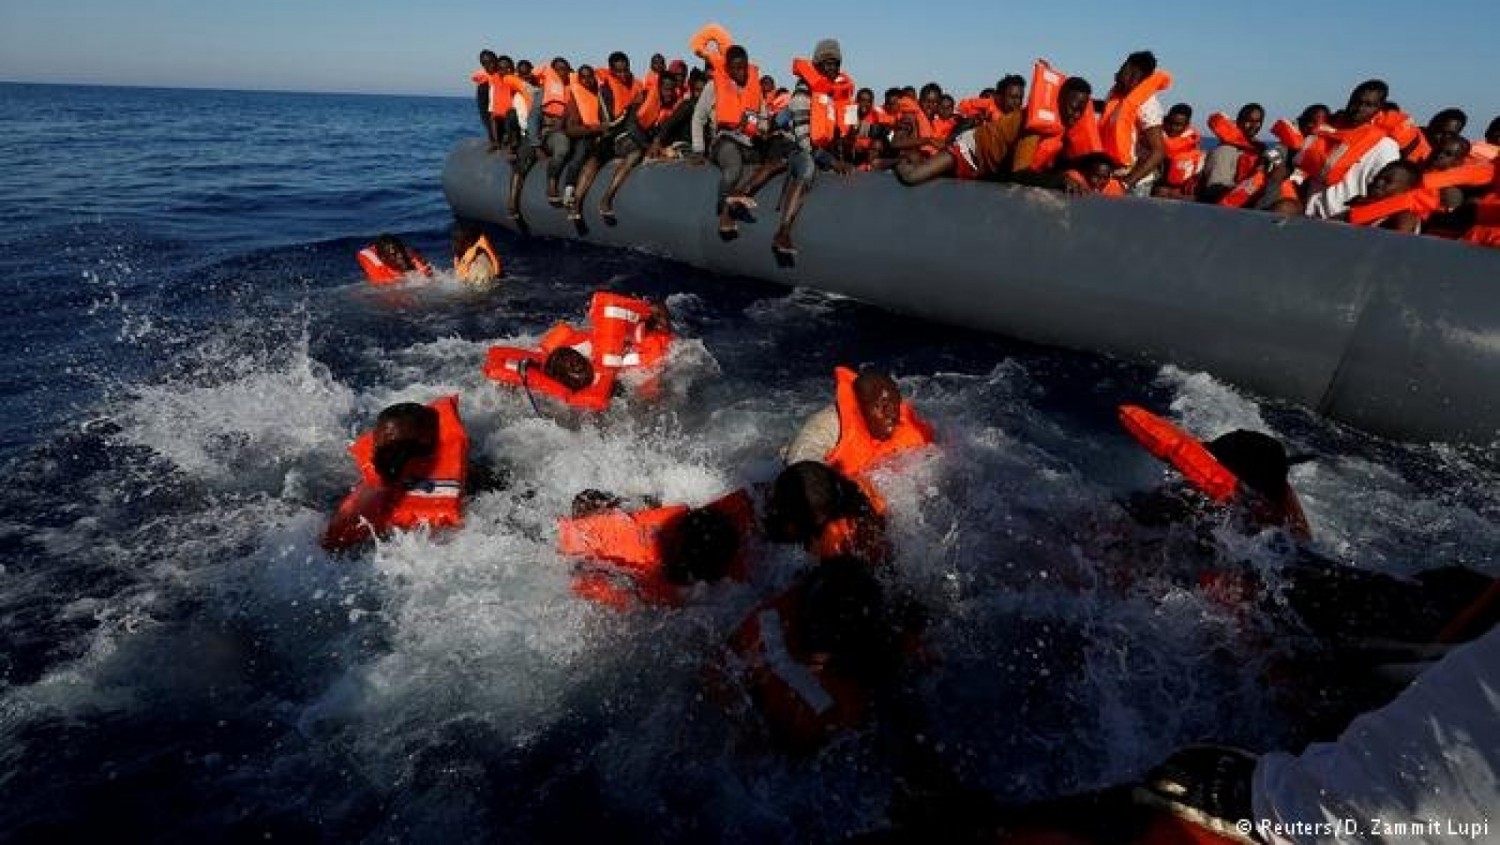 Tunisie : Naufrage au large de Lampedusa, 41 migrants disparus et 4 survivants dont des ivoiriens